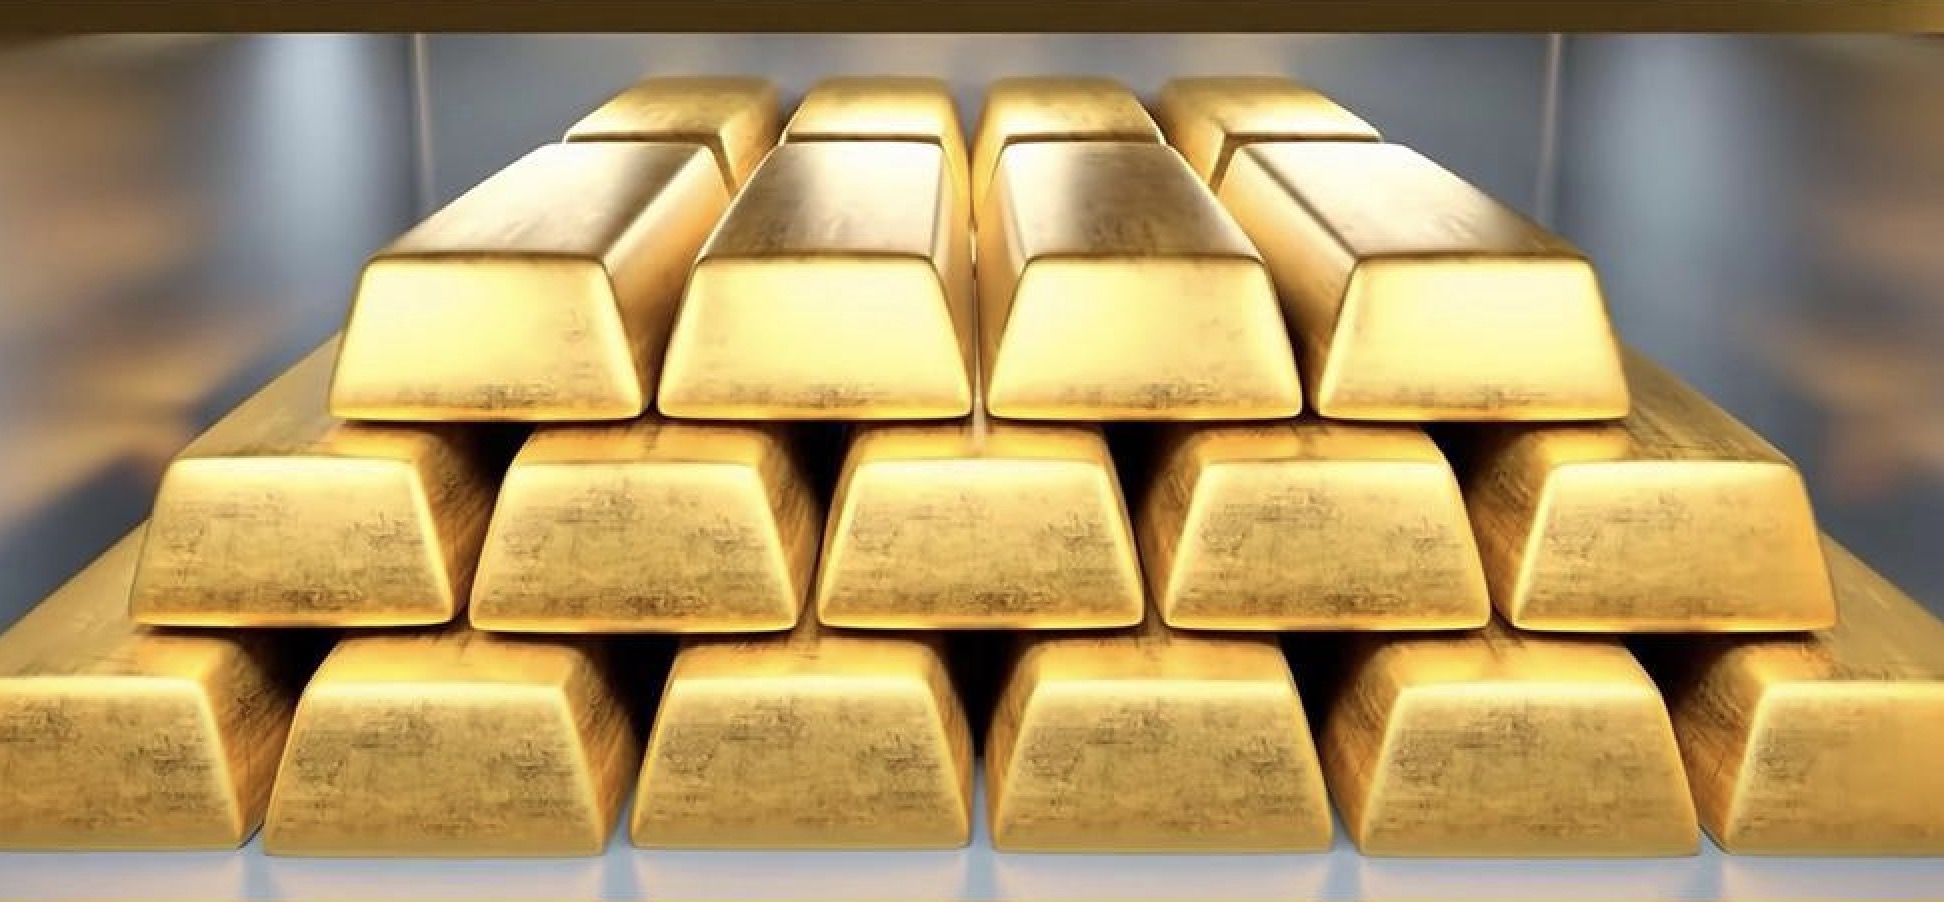 Pengingat perdagangan emas: Harga emas turun kembali setelah mencapai titik tertinggi baru dalam sejarah.